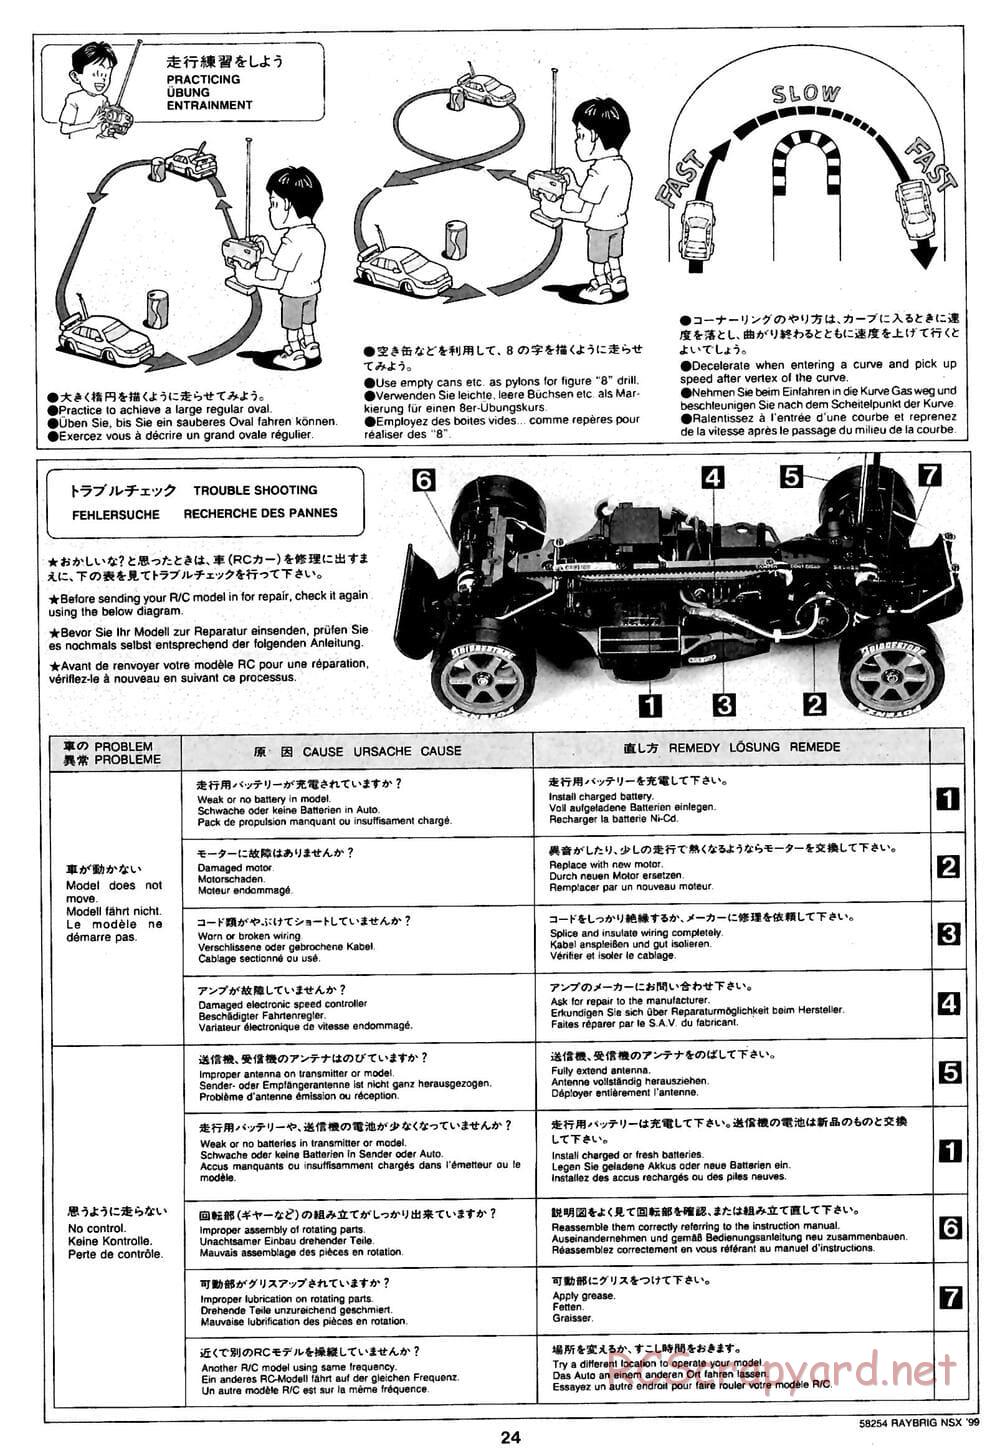 Tamiya - Raybrig NSX 99 - TA-03R Chassis - Manual - Page 24